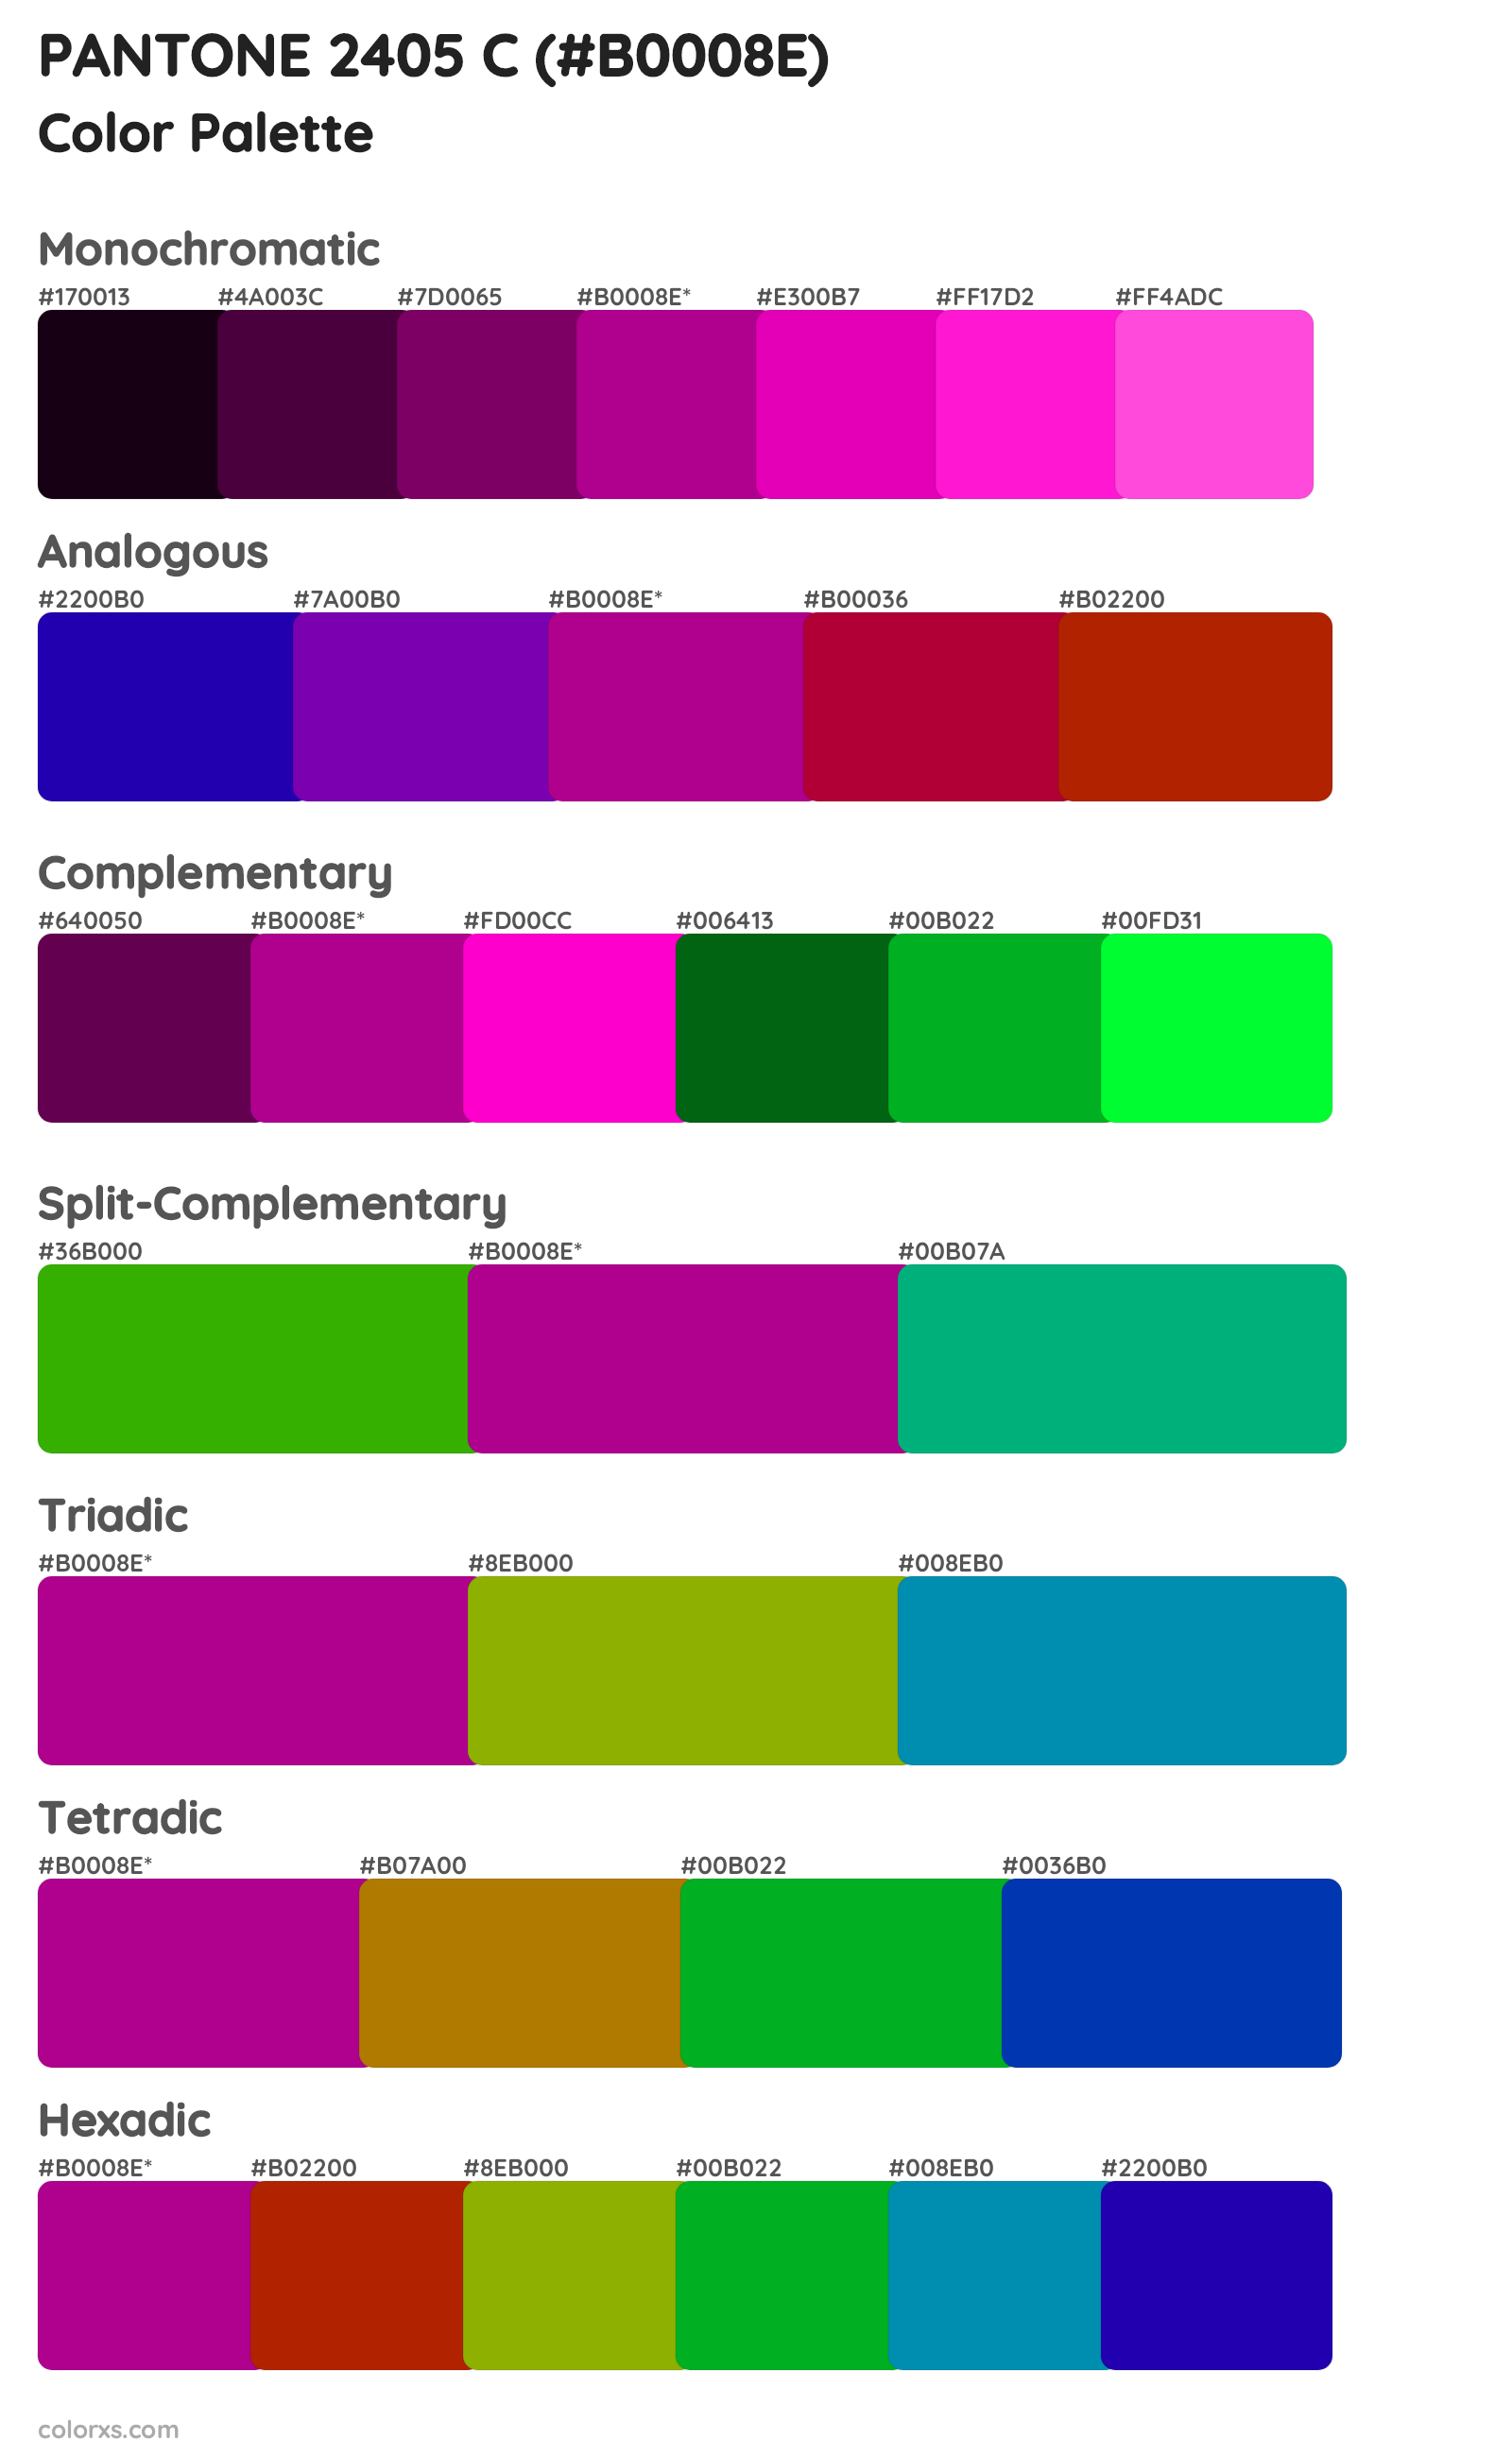 PANTONE 2405 C Color Scheme Palettes